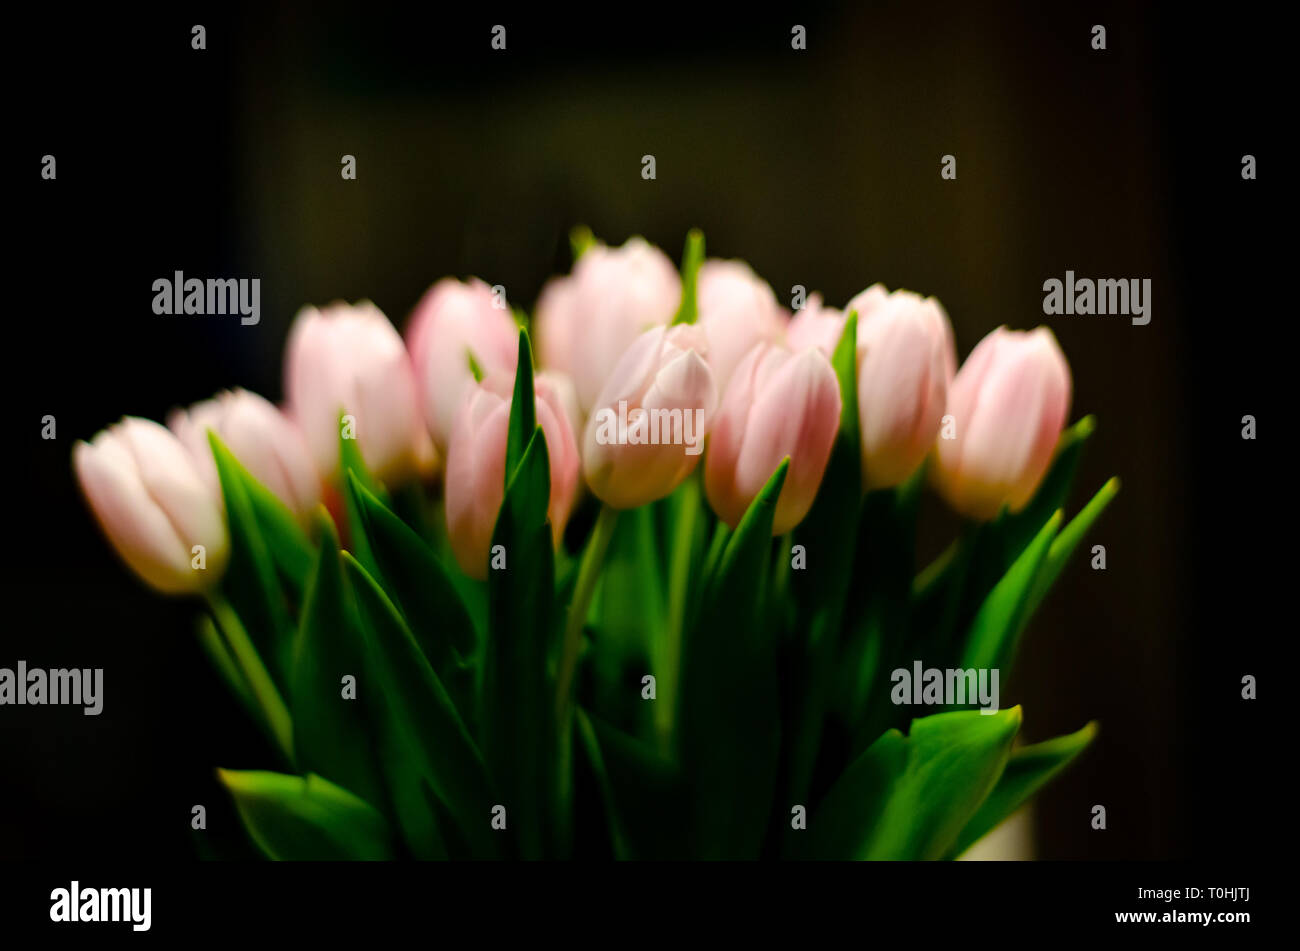 Tulips in vase Stock Photo